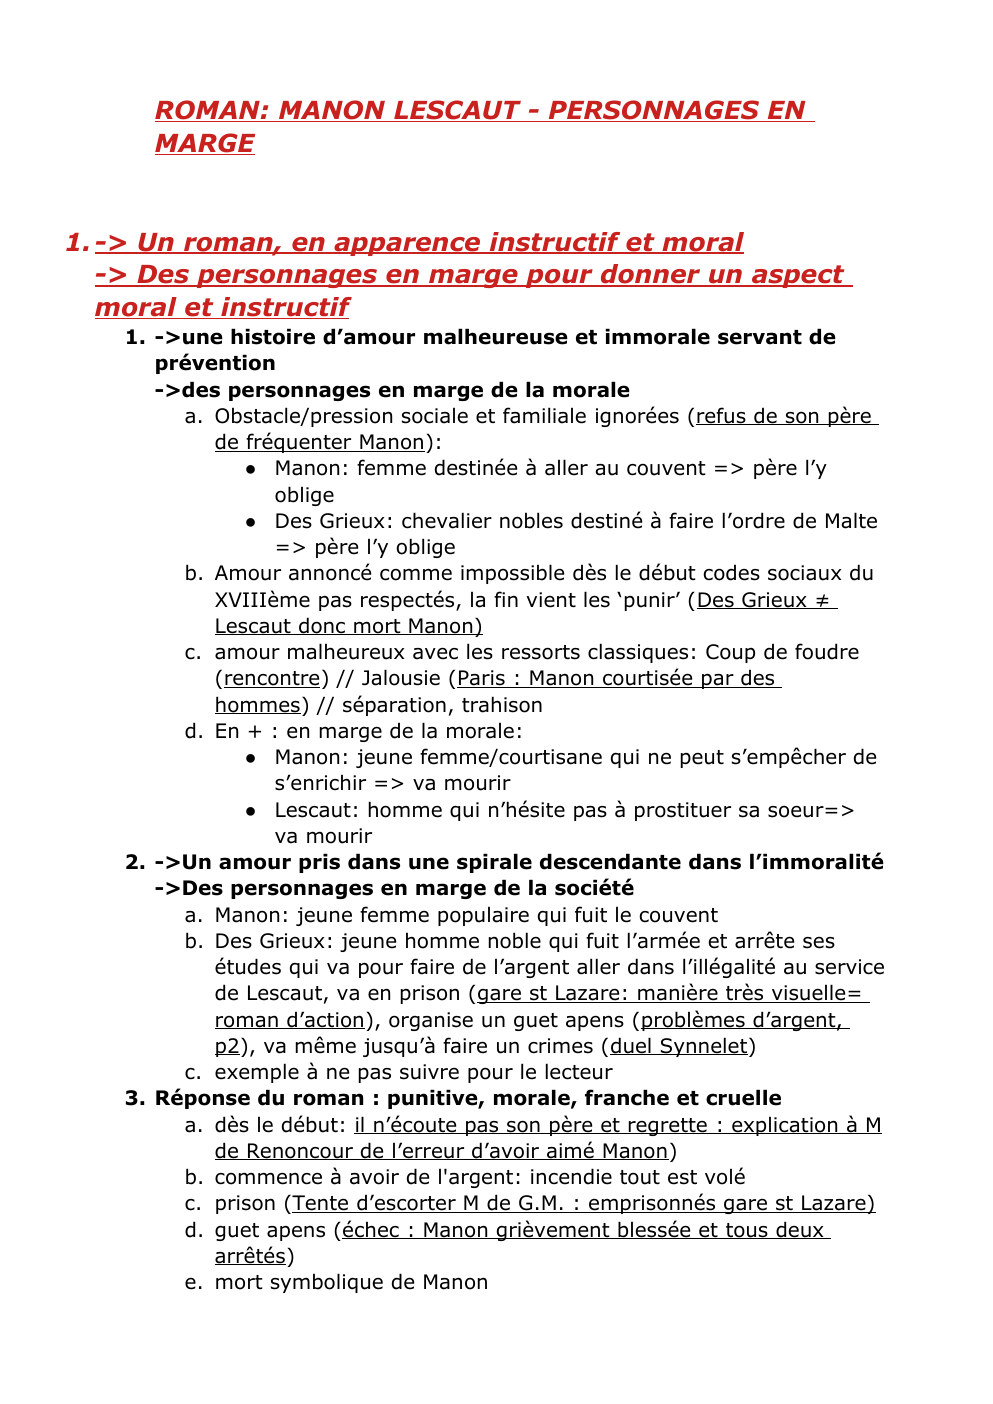 Prévisualisation du document ROMAN: MANON LESCAUT - PERSONNAGES EN MARGE